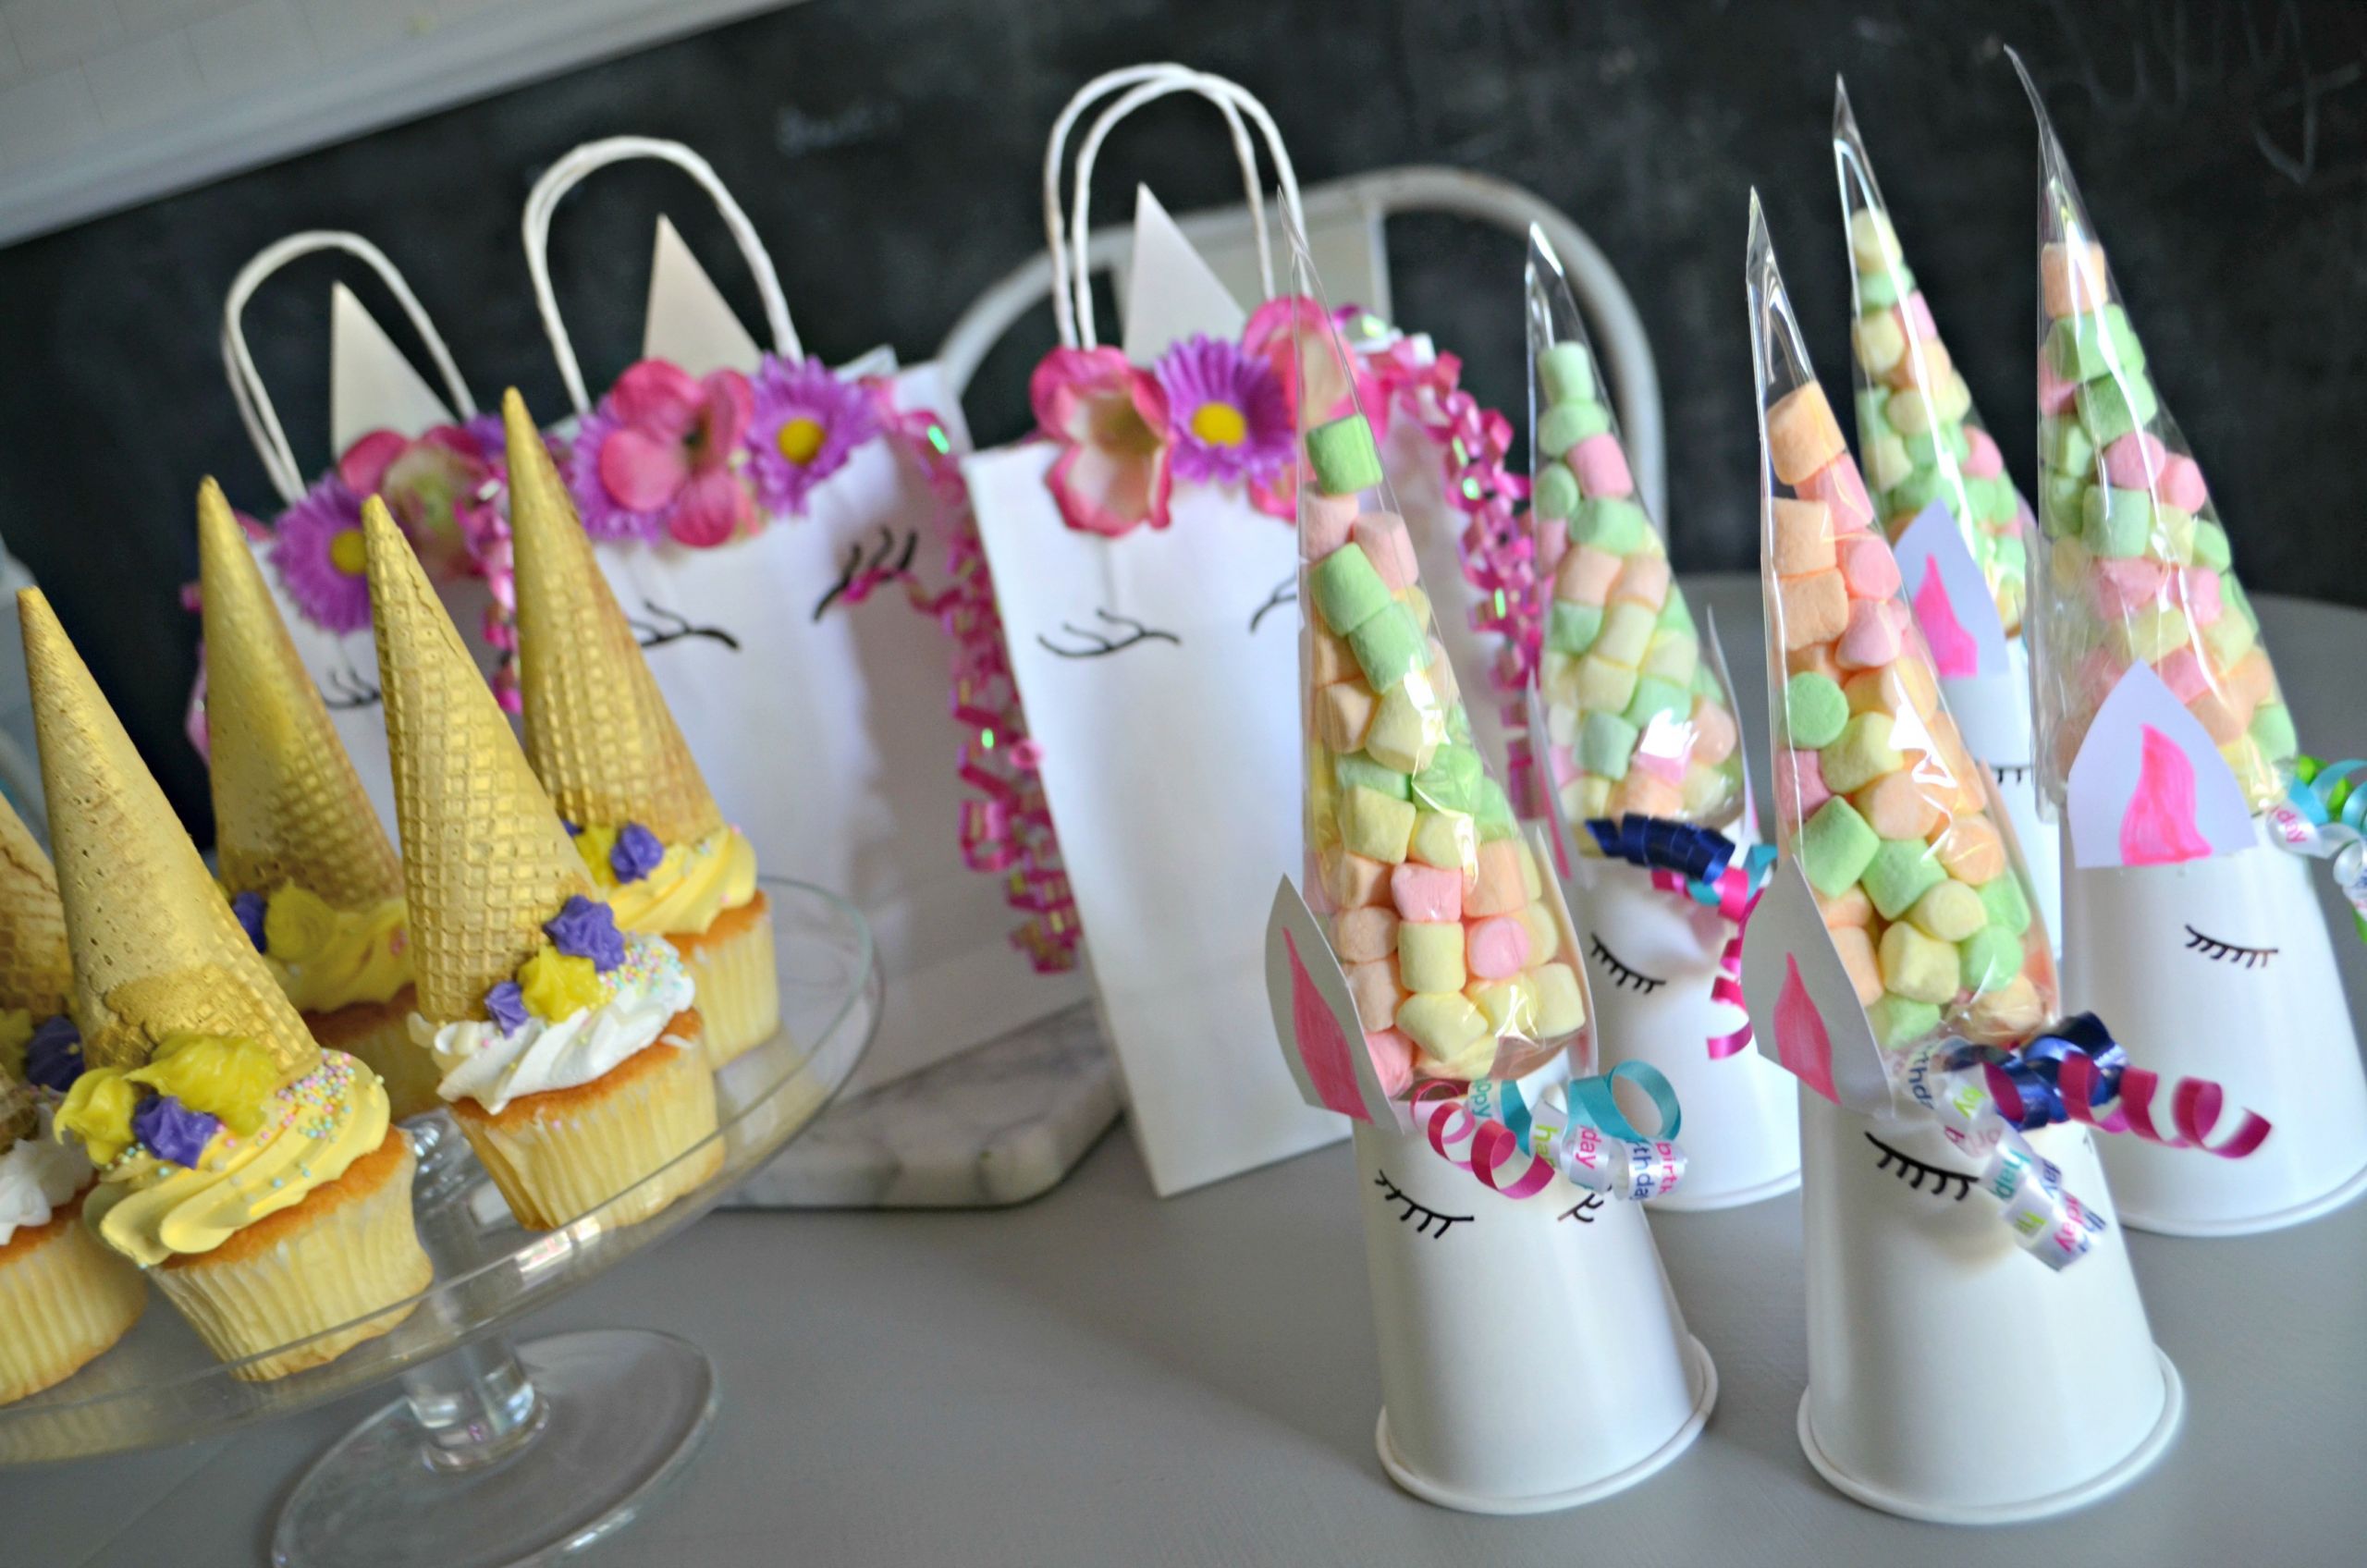 DIY Birthday Decorations Ideas
 Make These 3 Frugal Cute and Easy DIY Unicorn Birthday